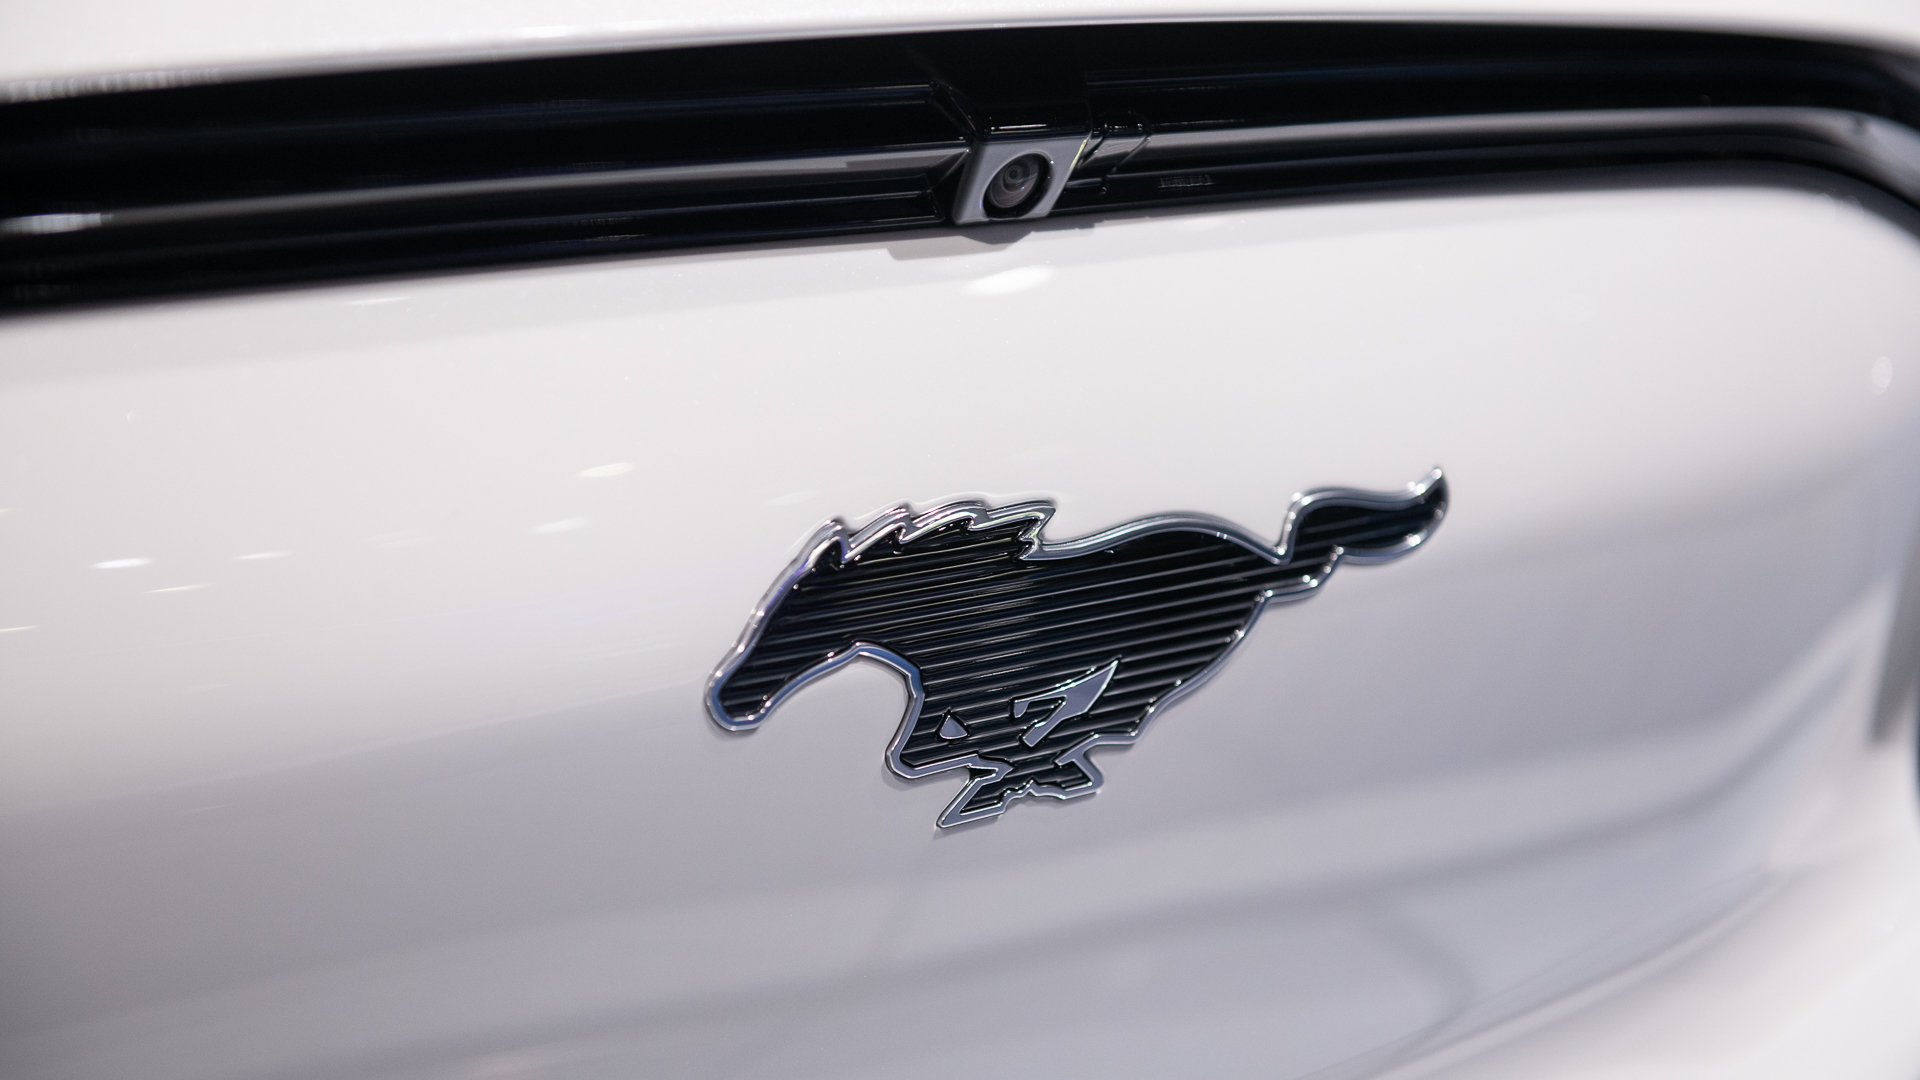 2021 Ford Mustang Mach-E, 2019 LA Auto Show